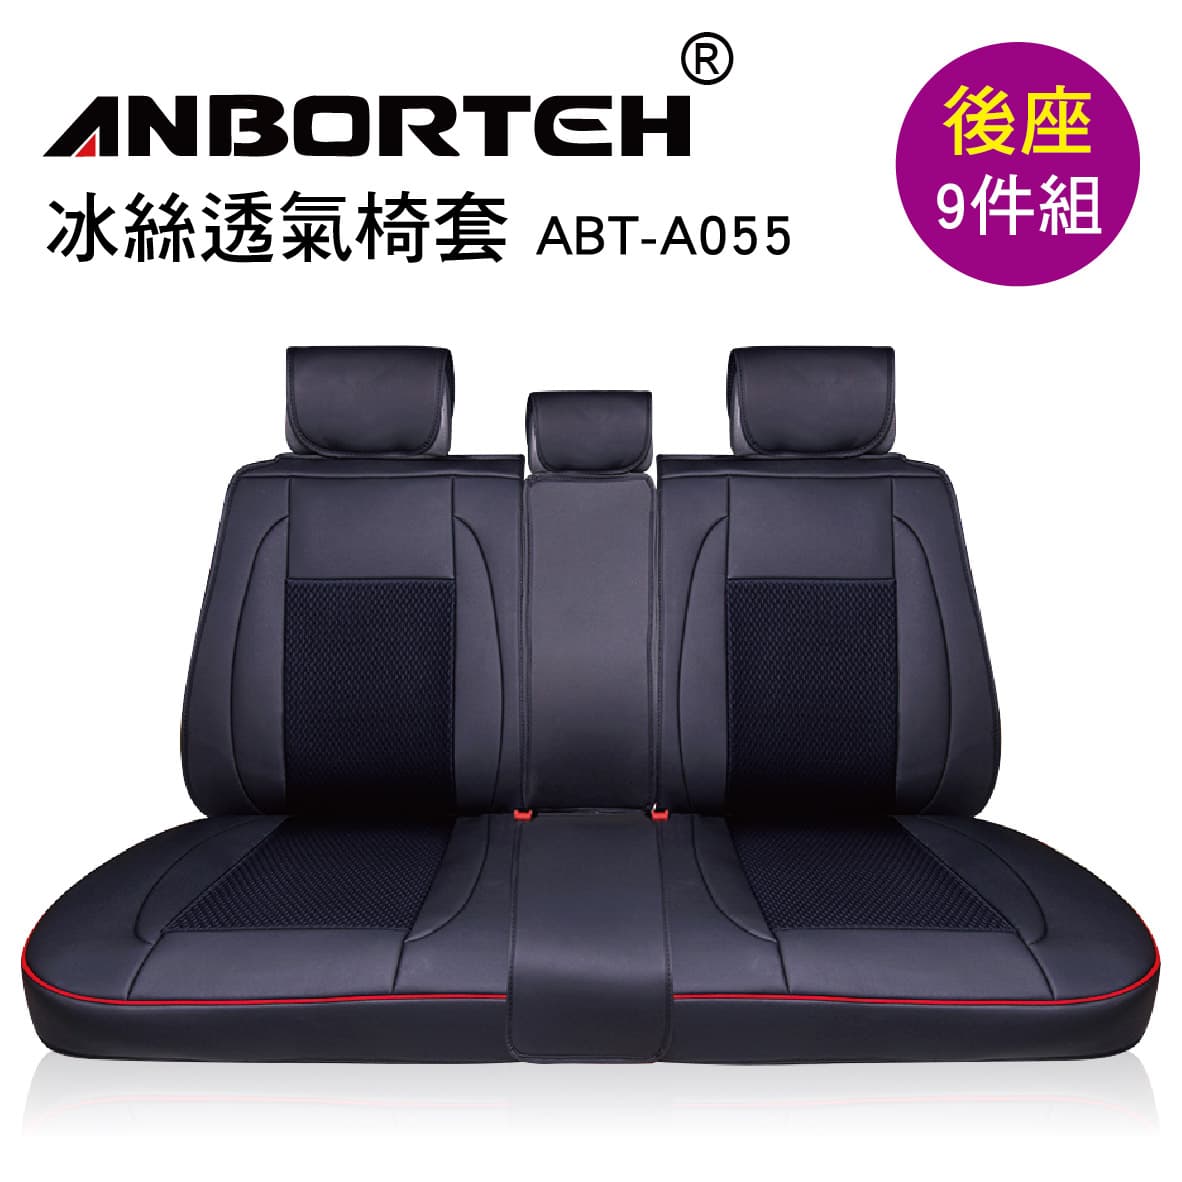 真便宜 ANBORTEH安伯特 ABT-A055 冰絲透氣椅套(後座9件組)